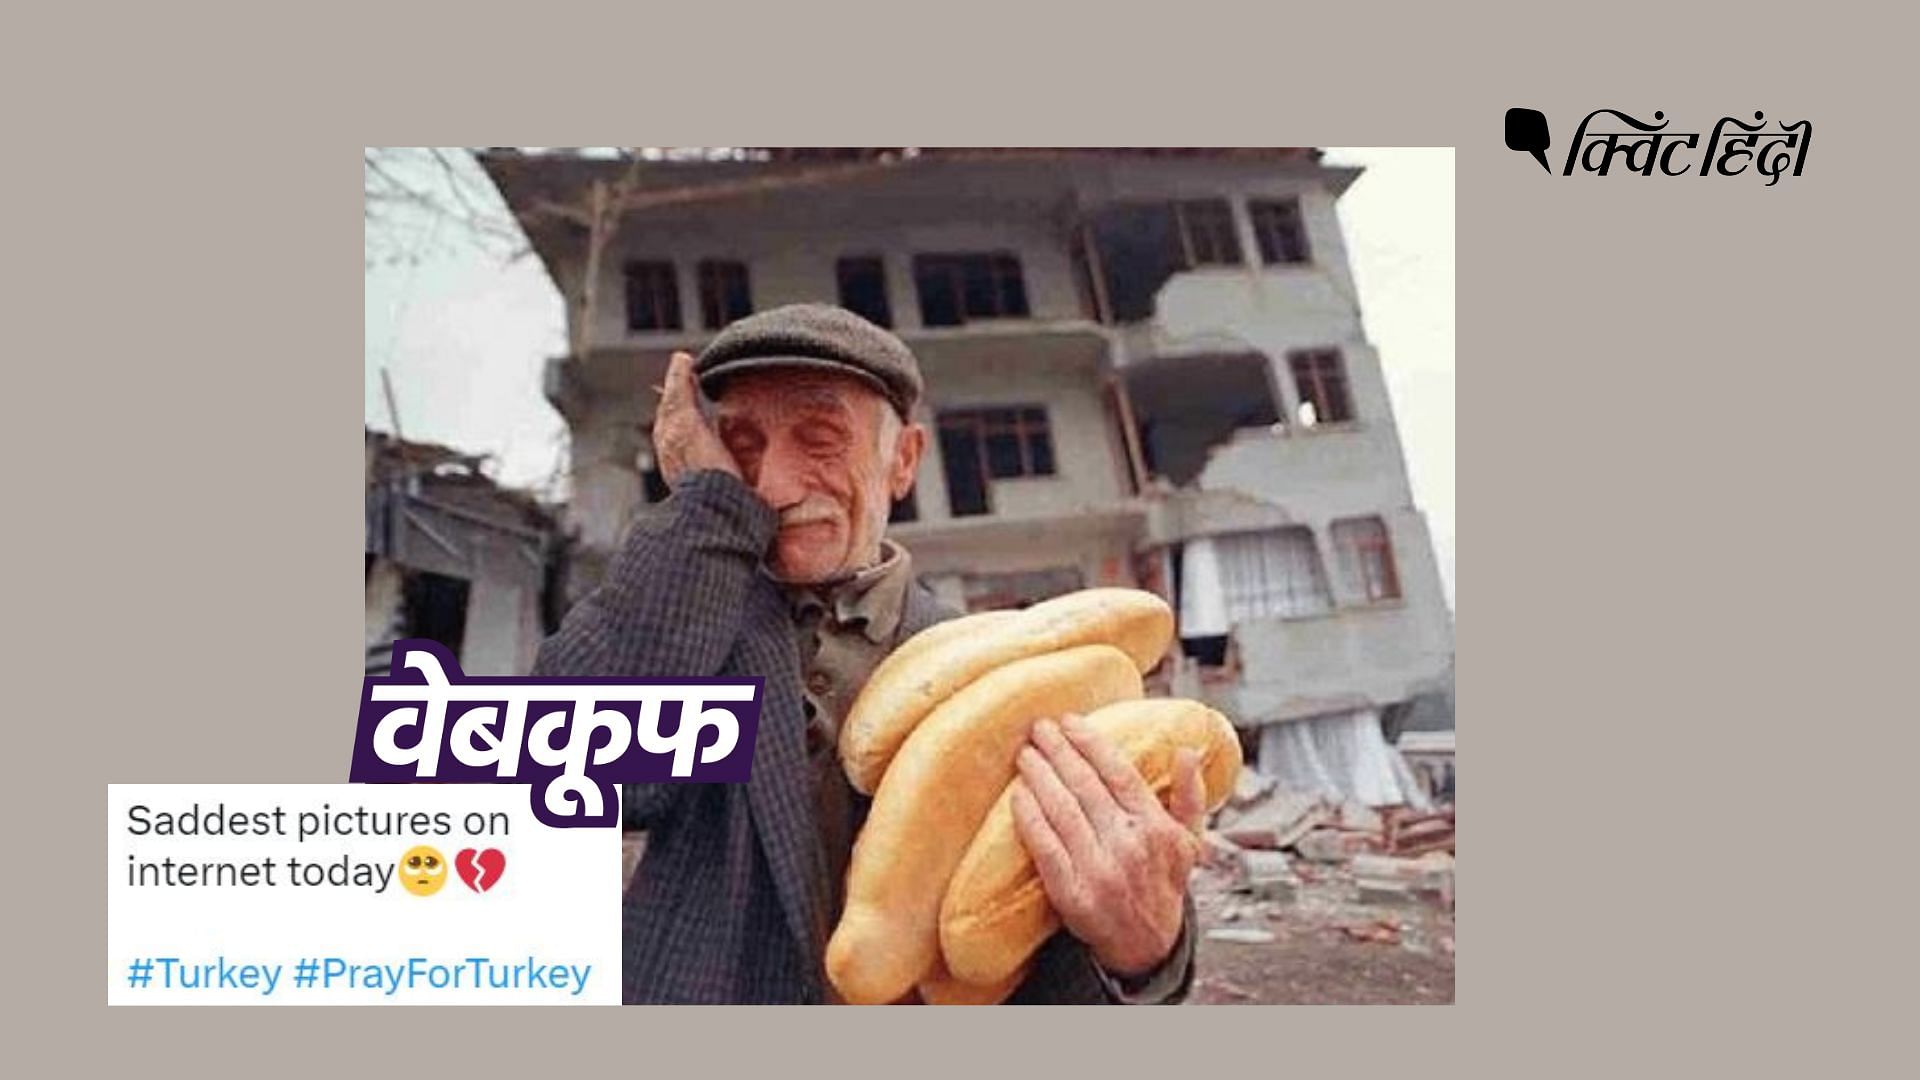 <div class="paragraphs"><p>वायरल फोटो का तुर्की-सीरिया में आए भूकंप से कोई संबंध नहीं. फोटो 24 साल पुरानी है.</p></div>